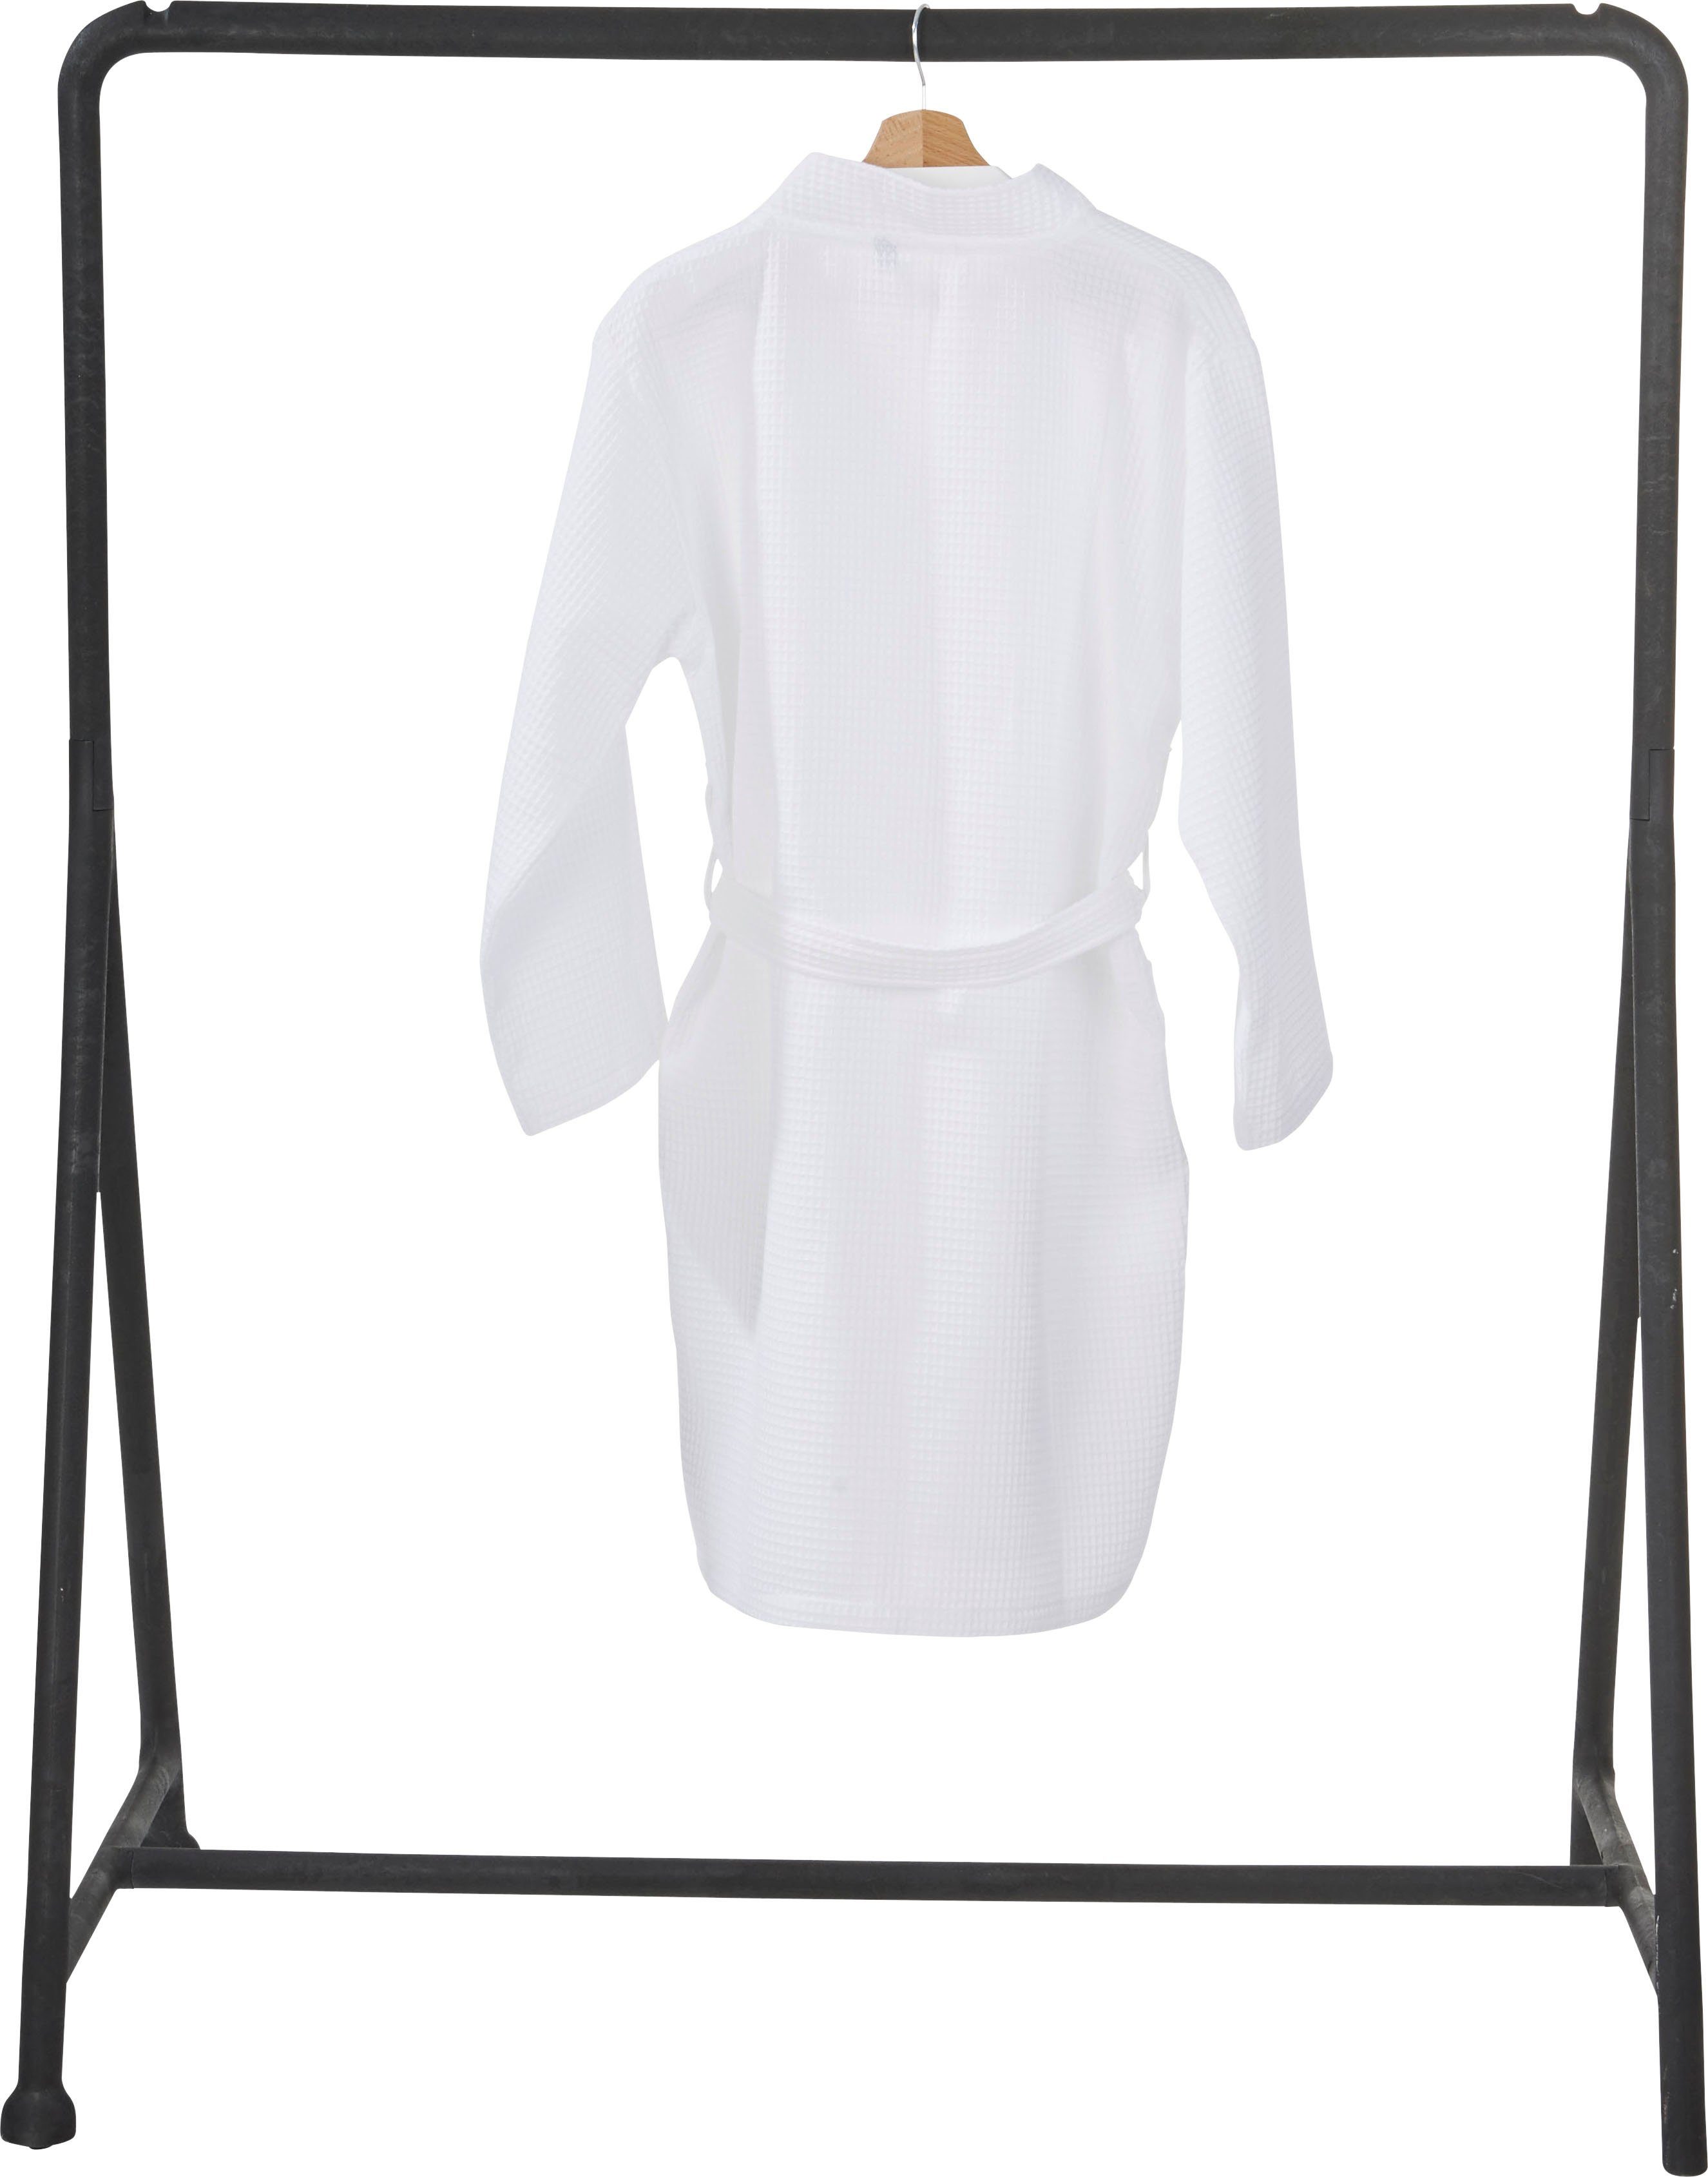 MySense, done.® weiß Taschen Piqué, und mit Schalkragen aufgesetzten Damenbademantel Kurzform, Waffelpiqué-Struktur,